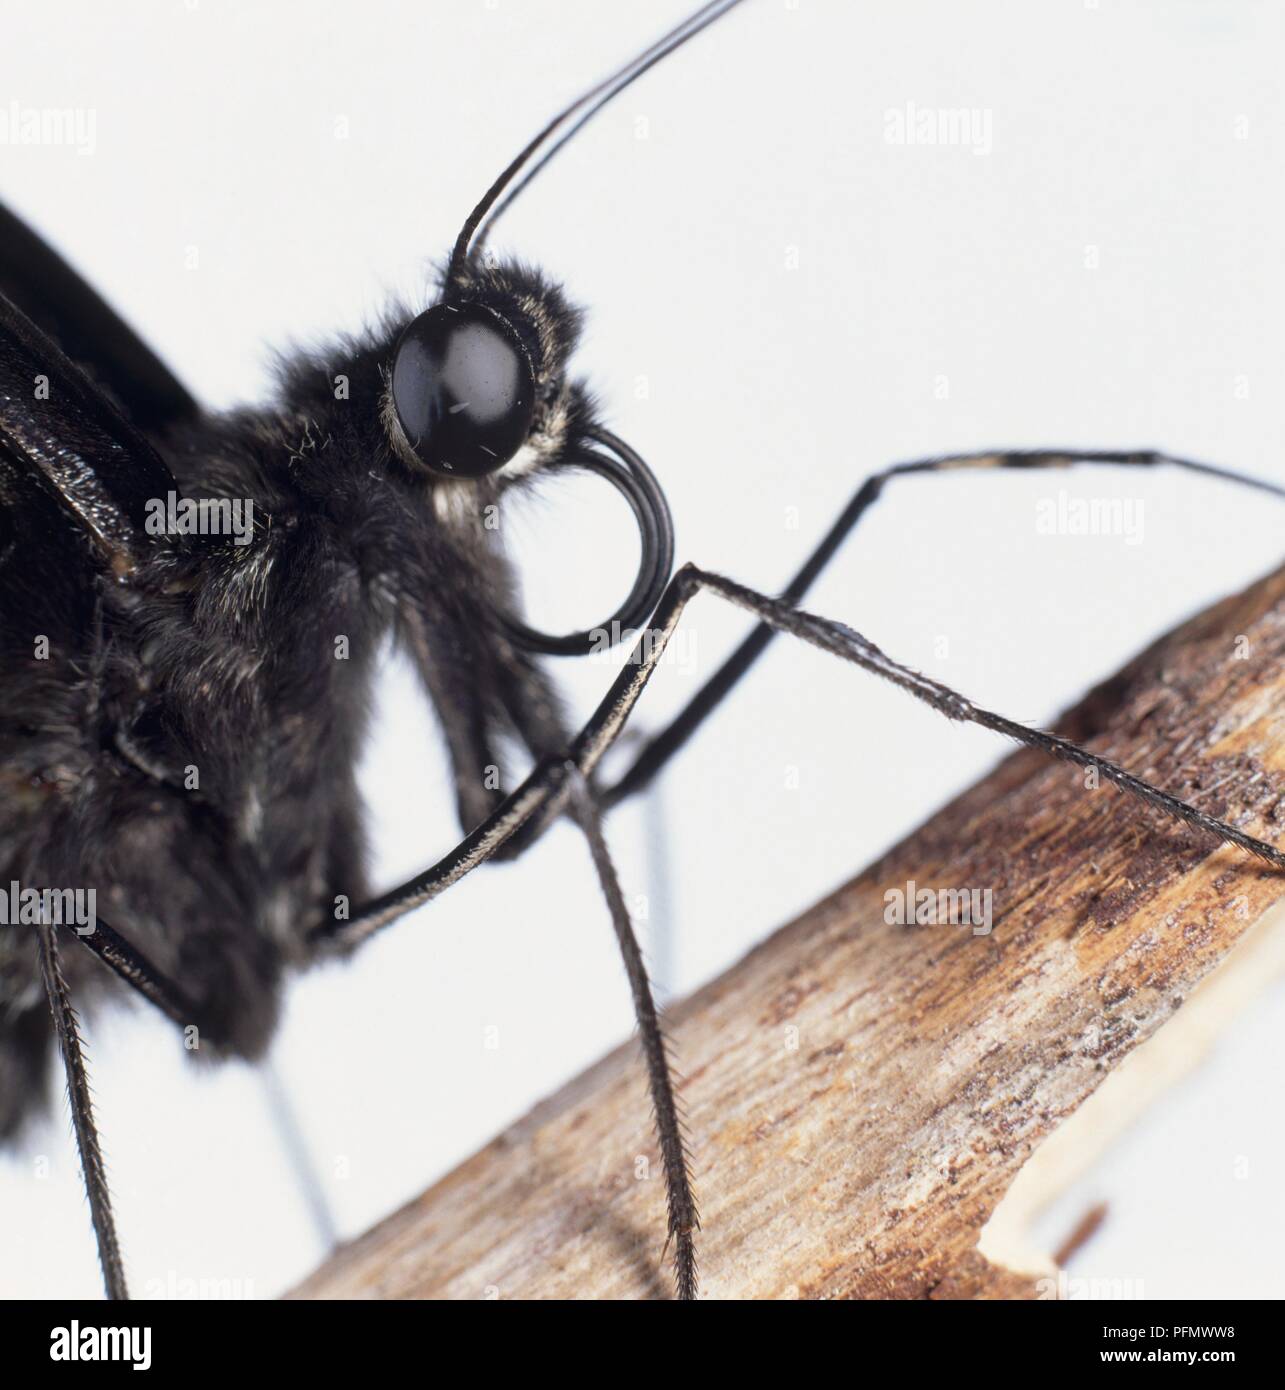 Testa, occhi, le gambe e le antenne della farfalla nera sullo stelo, extreme close-up Foto Stock